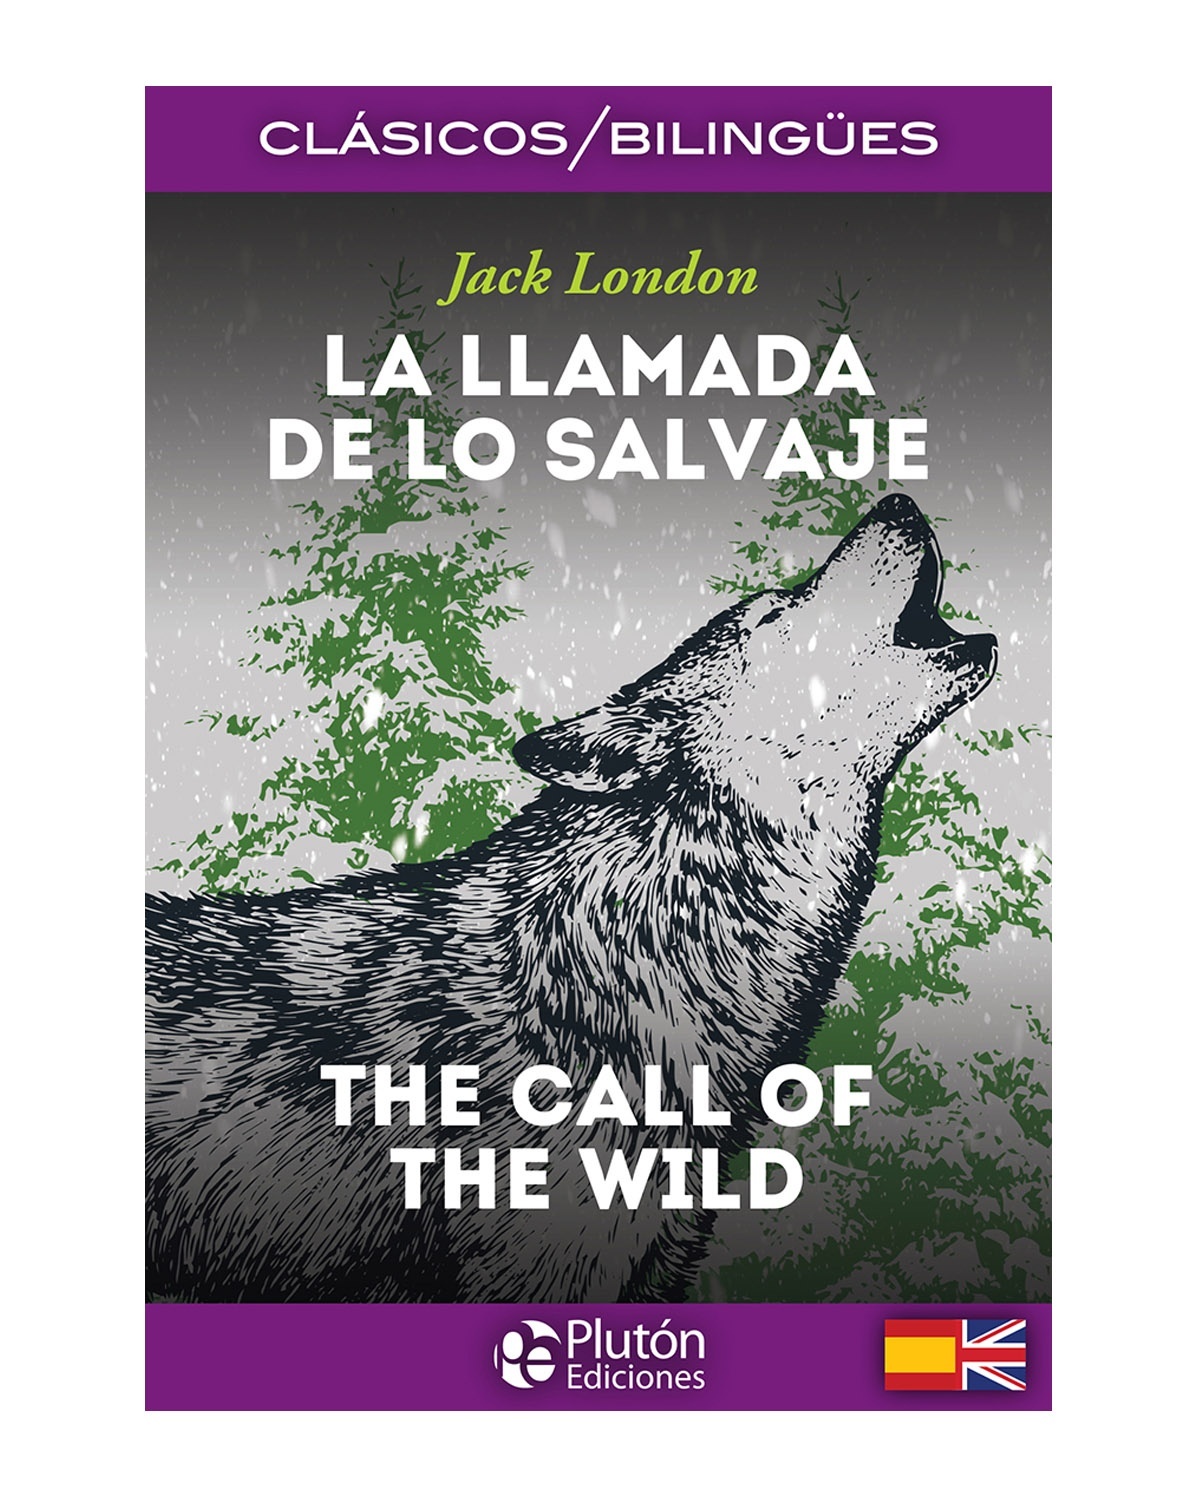 La Llamada de lo Salvaje / The Call of the Wild